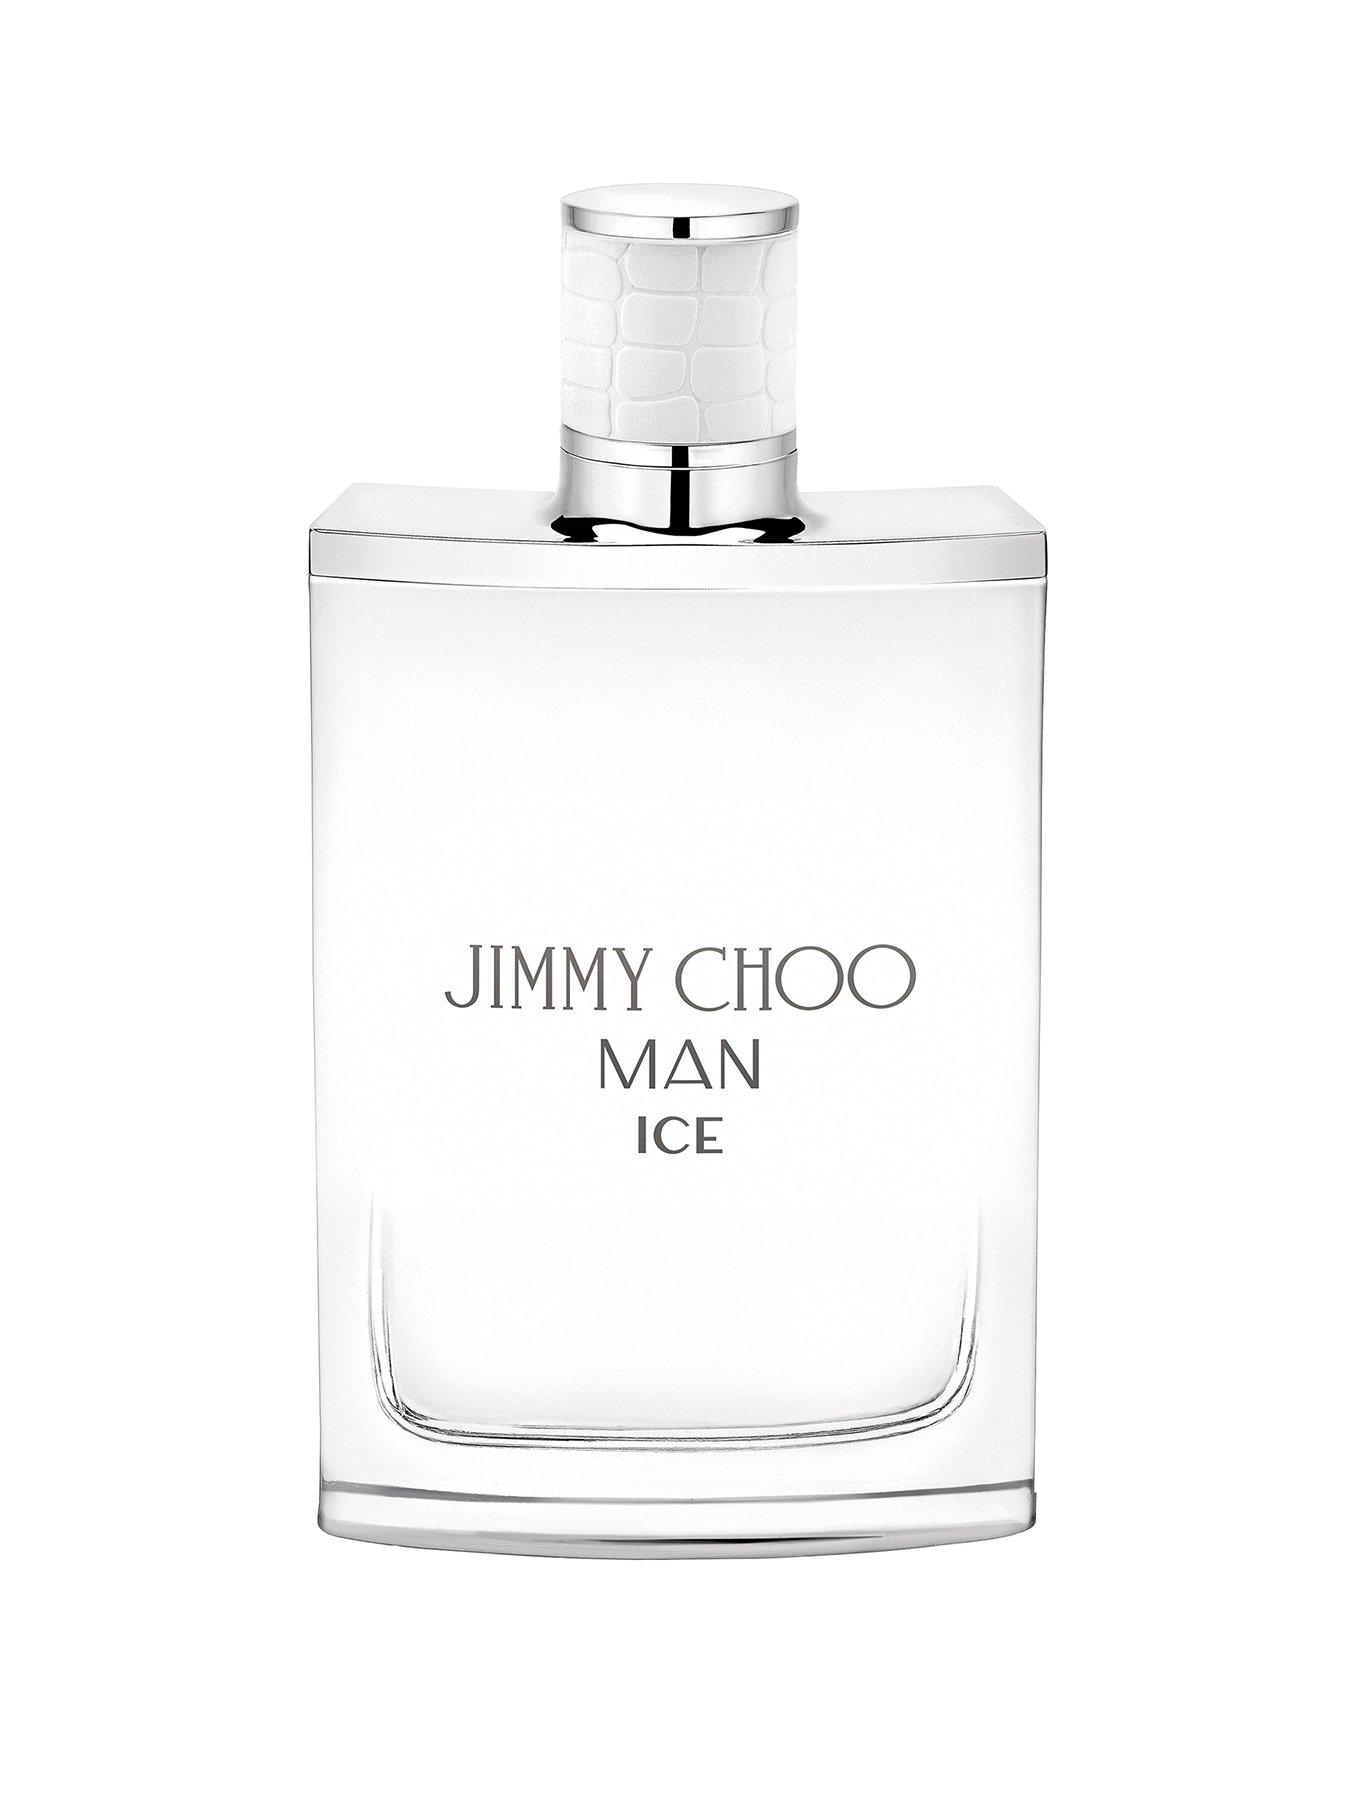 Jimmy Choo Man Ice Eau de Toilette 100ml | Very.co.uk